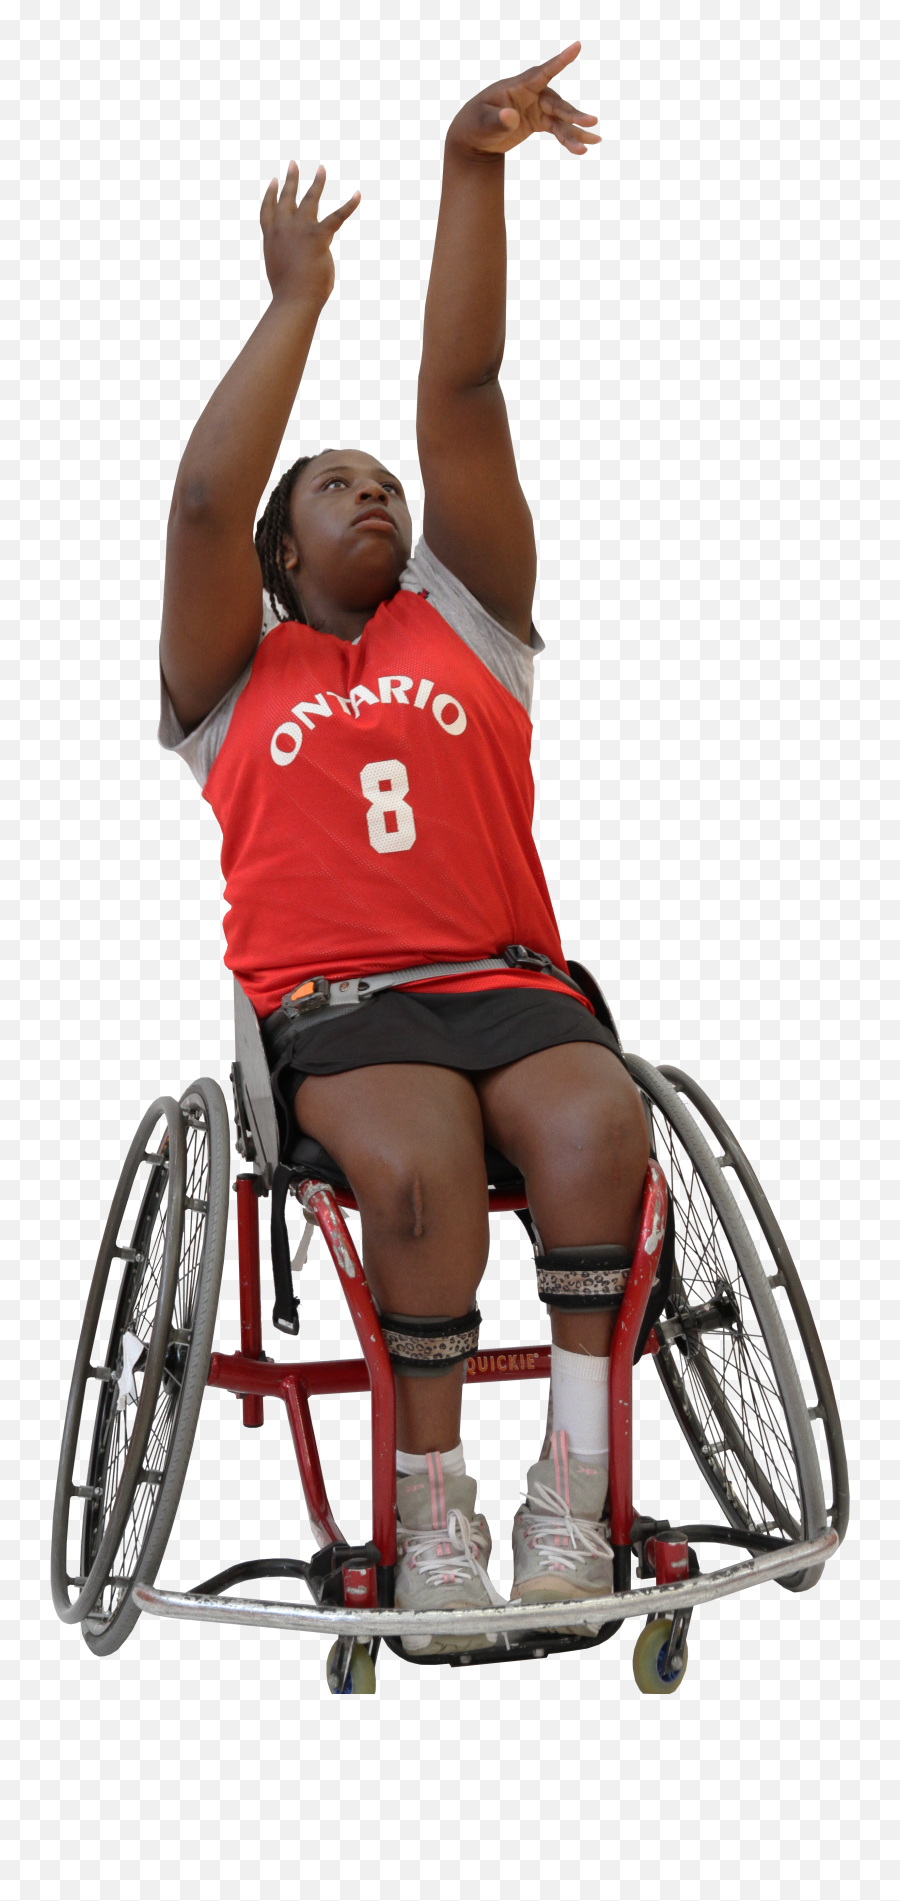 Provincial League - Ontario Para Network Paralympian Emoji,Basketball Transparent